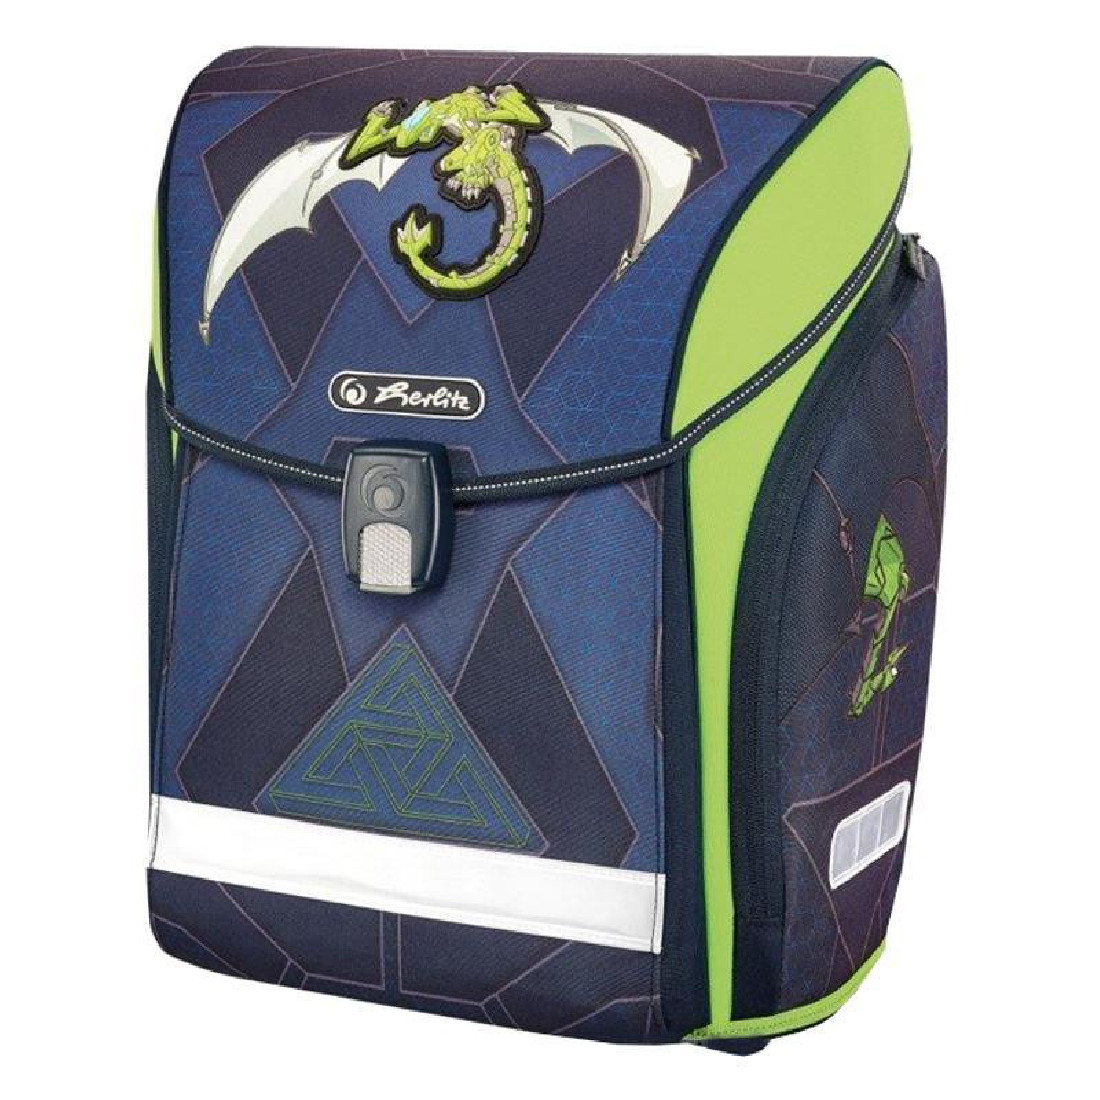 Σχολική τσάντα 50013807 Midi Green Dragon Herlitz